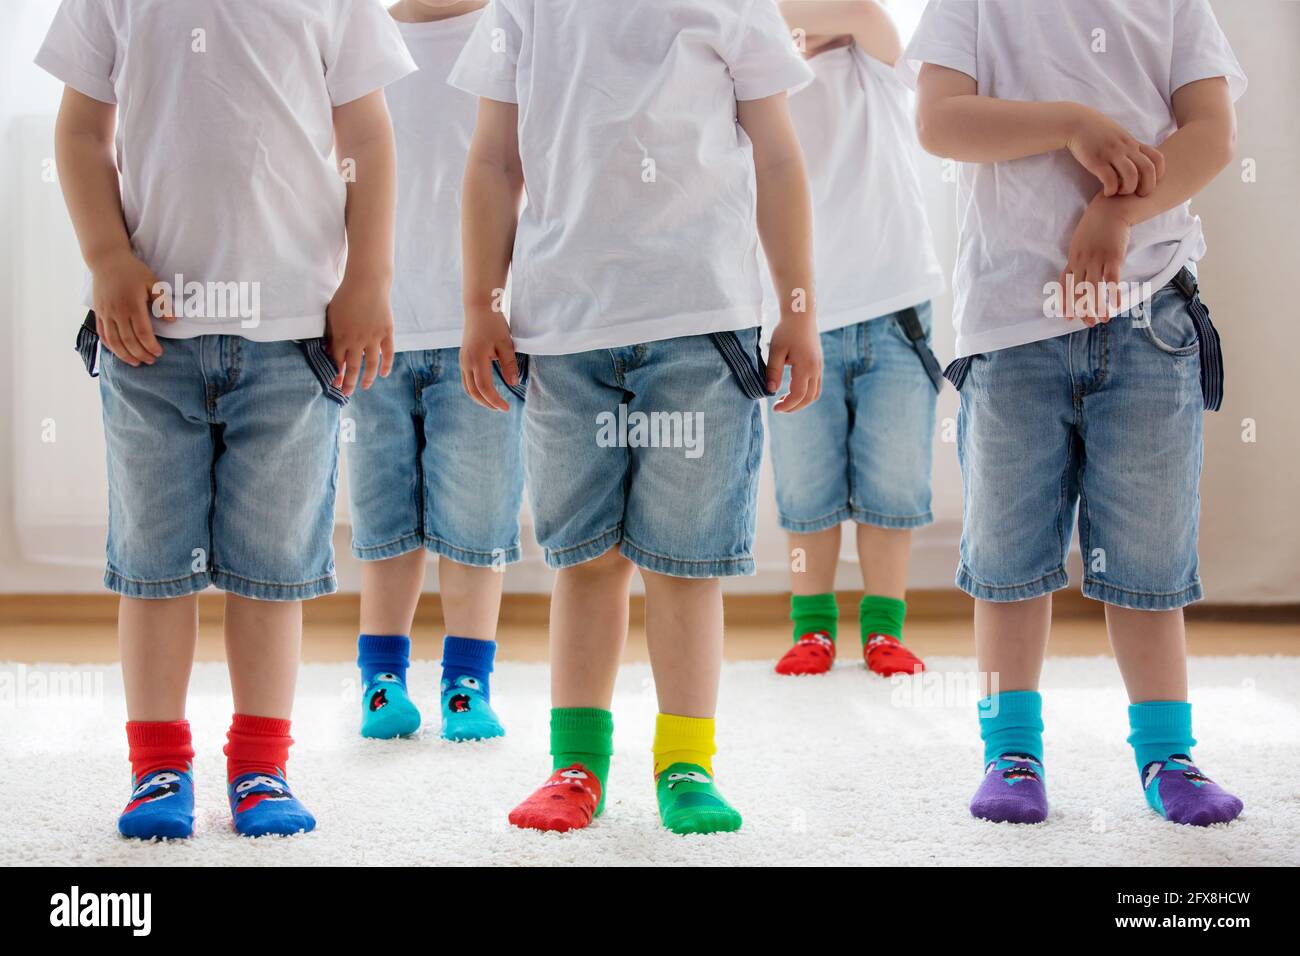 Pies para niños con diferentes calcetines en fila, los niños usan diferentes calcetines coloridos Fotografía de stock -